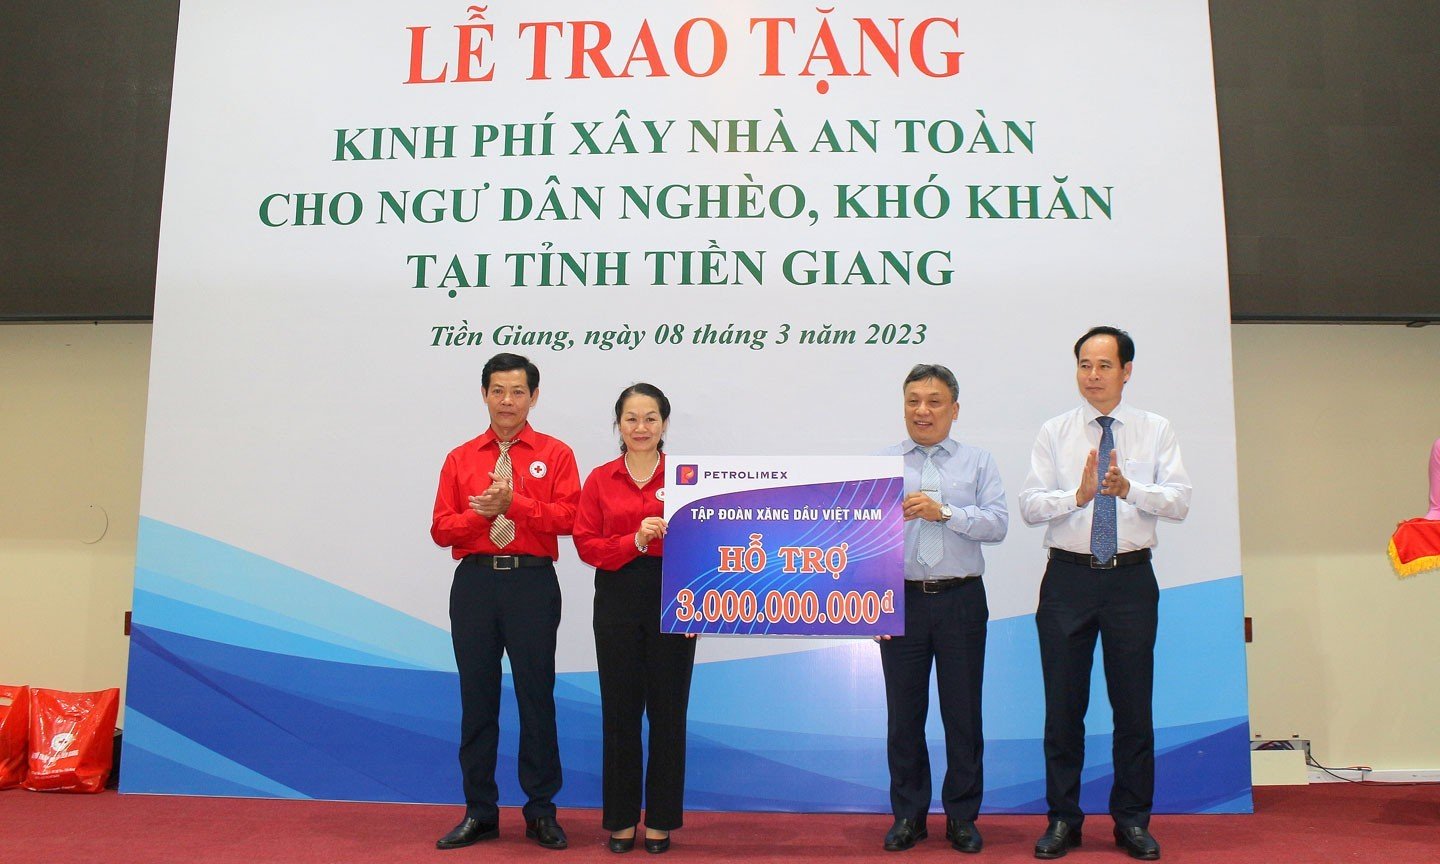 Hỗ trợ xây nhà cho ngư dân nghèo tại Tiền Giang